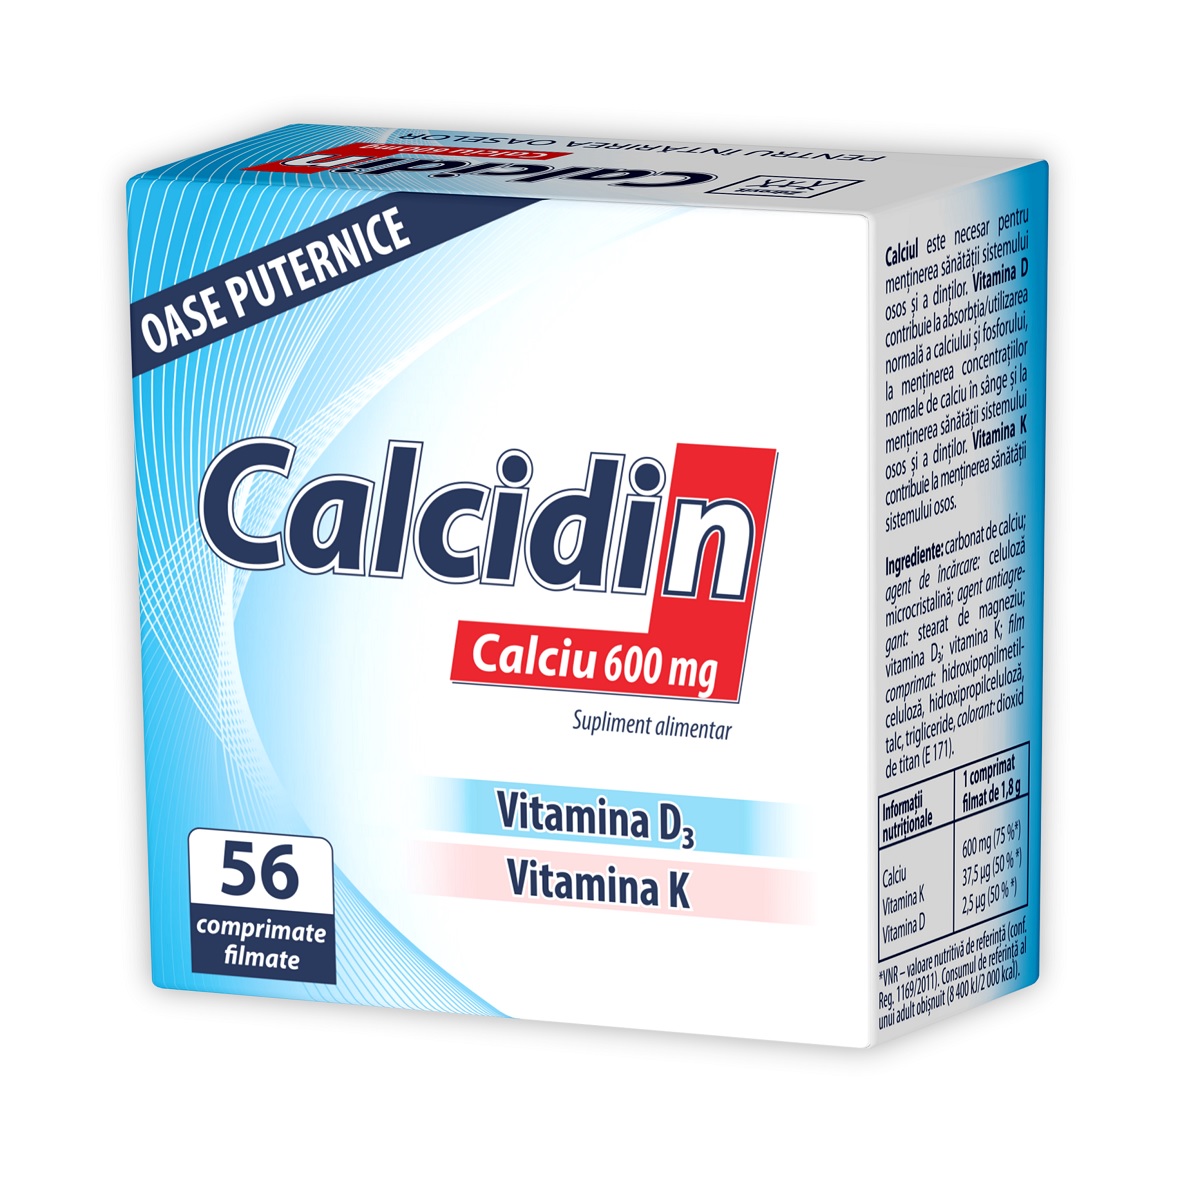 Osteoporoza - Calcidin, Calciu 600mg, 56 comprimate, Zdrovit, sinapis.ro